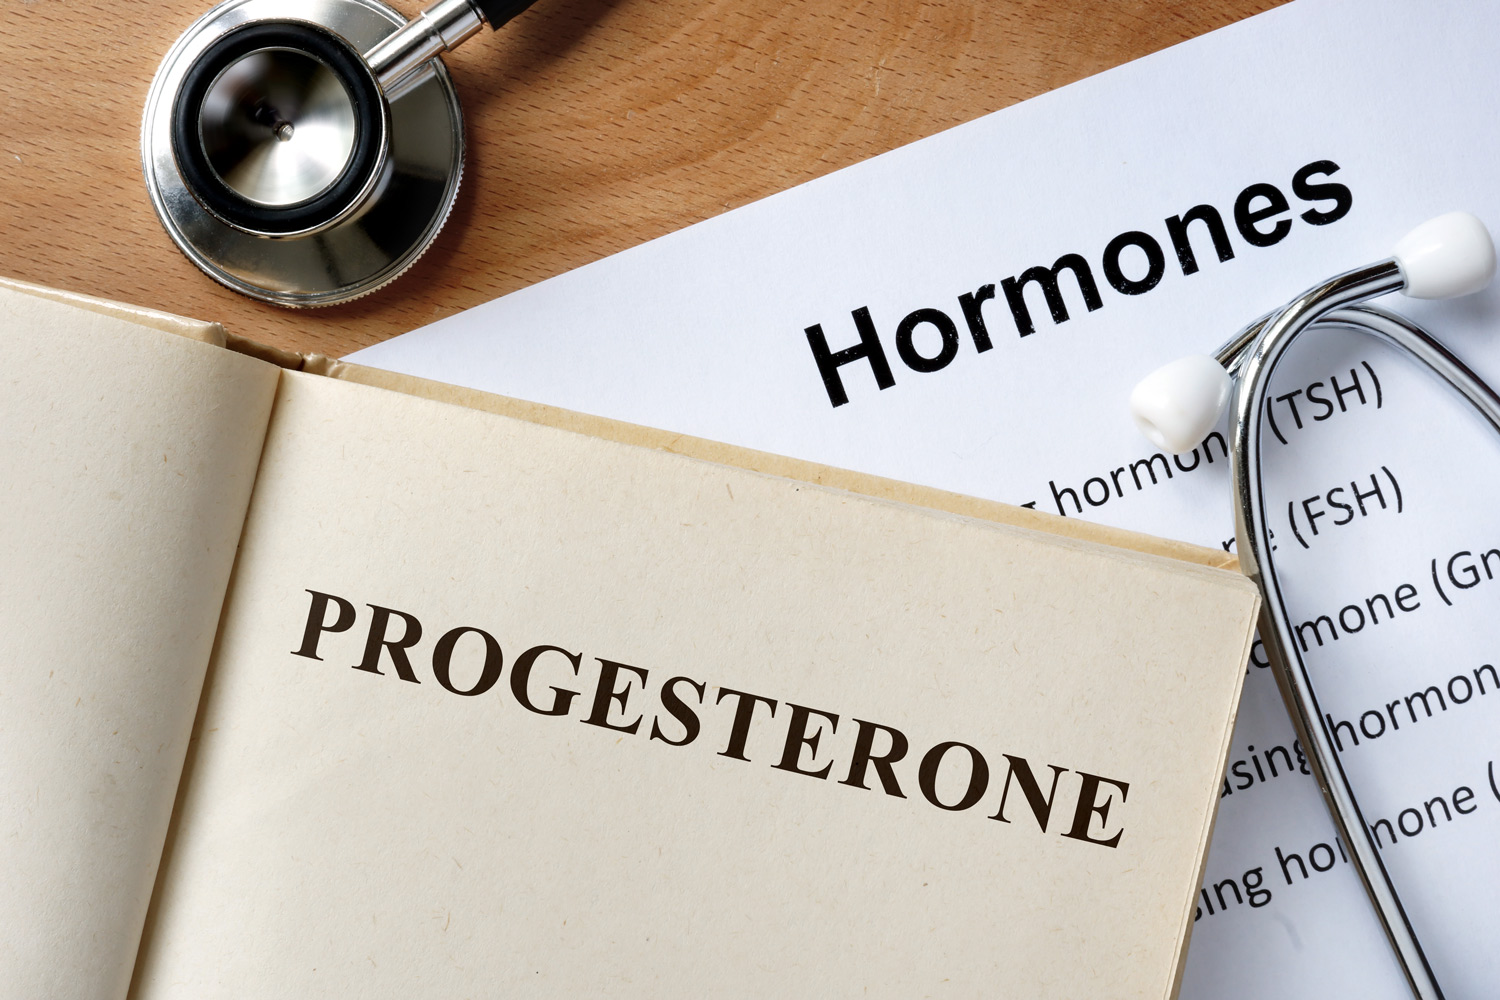 Qu’est-ce que la progesterone